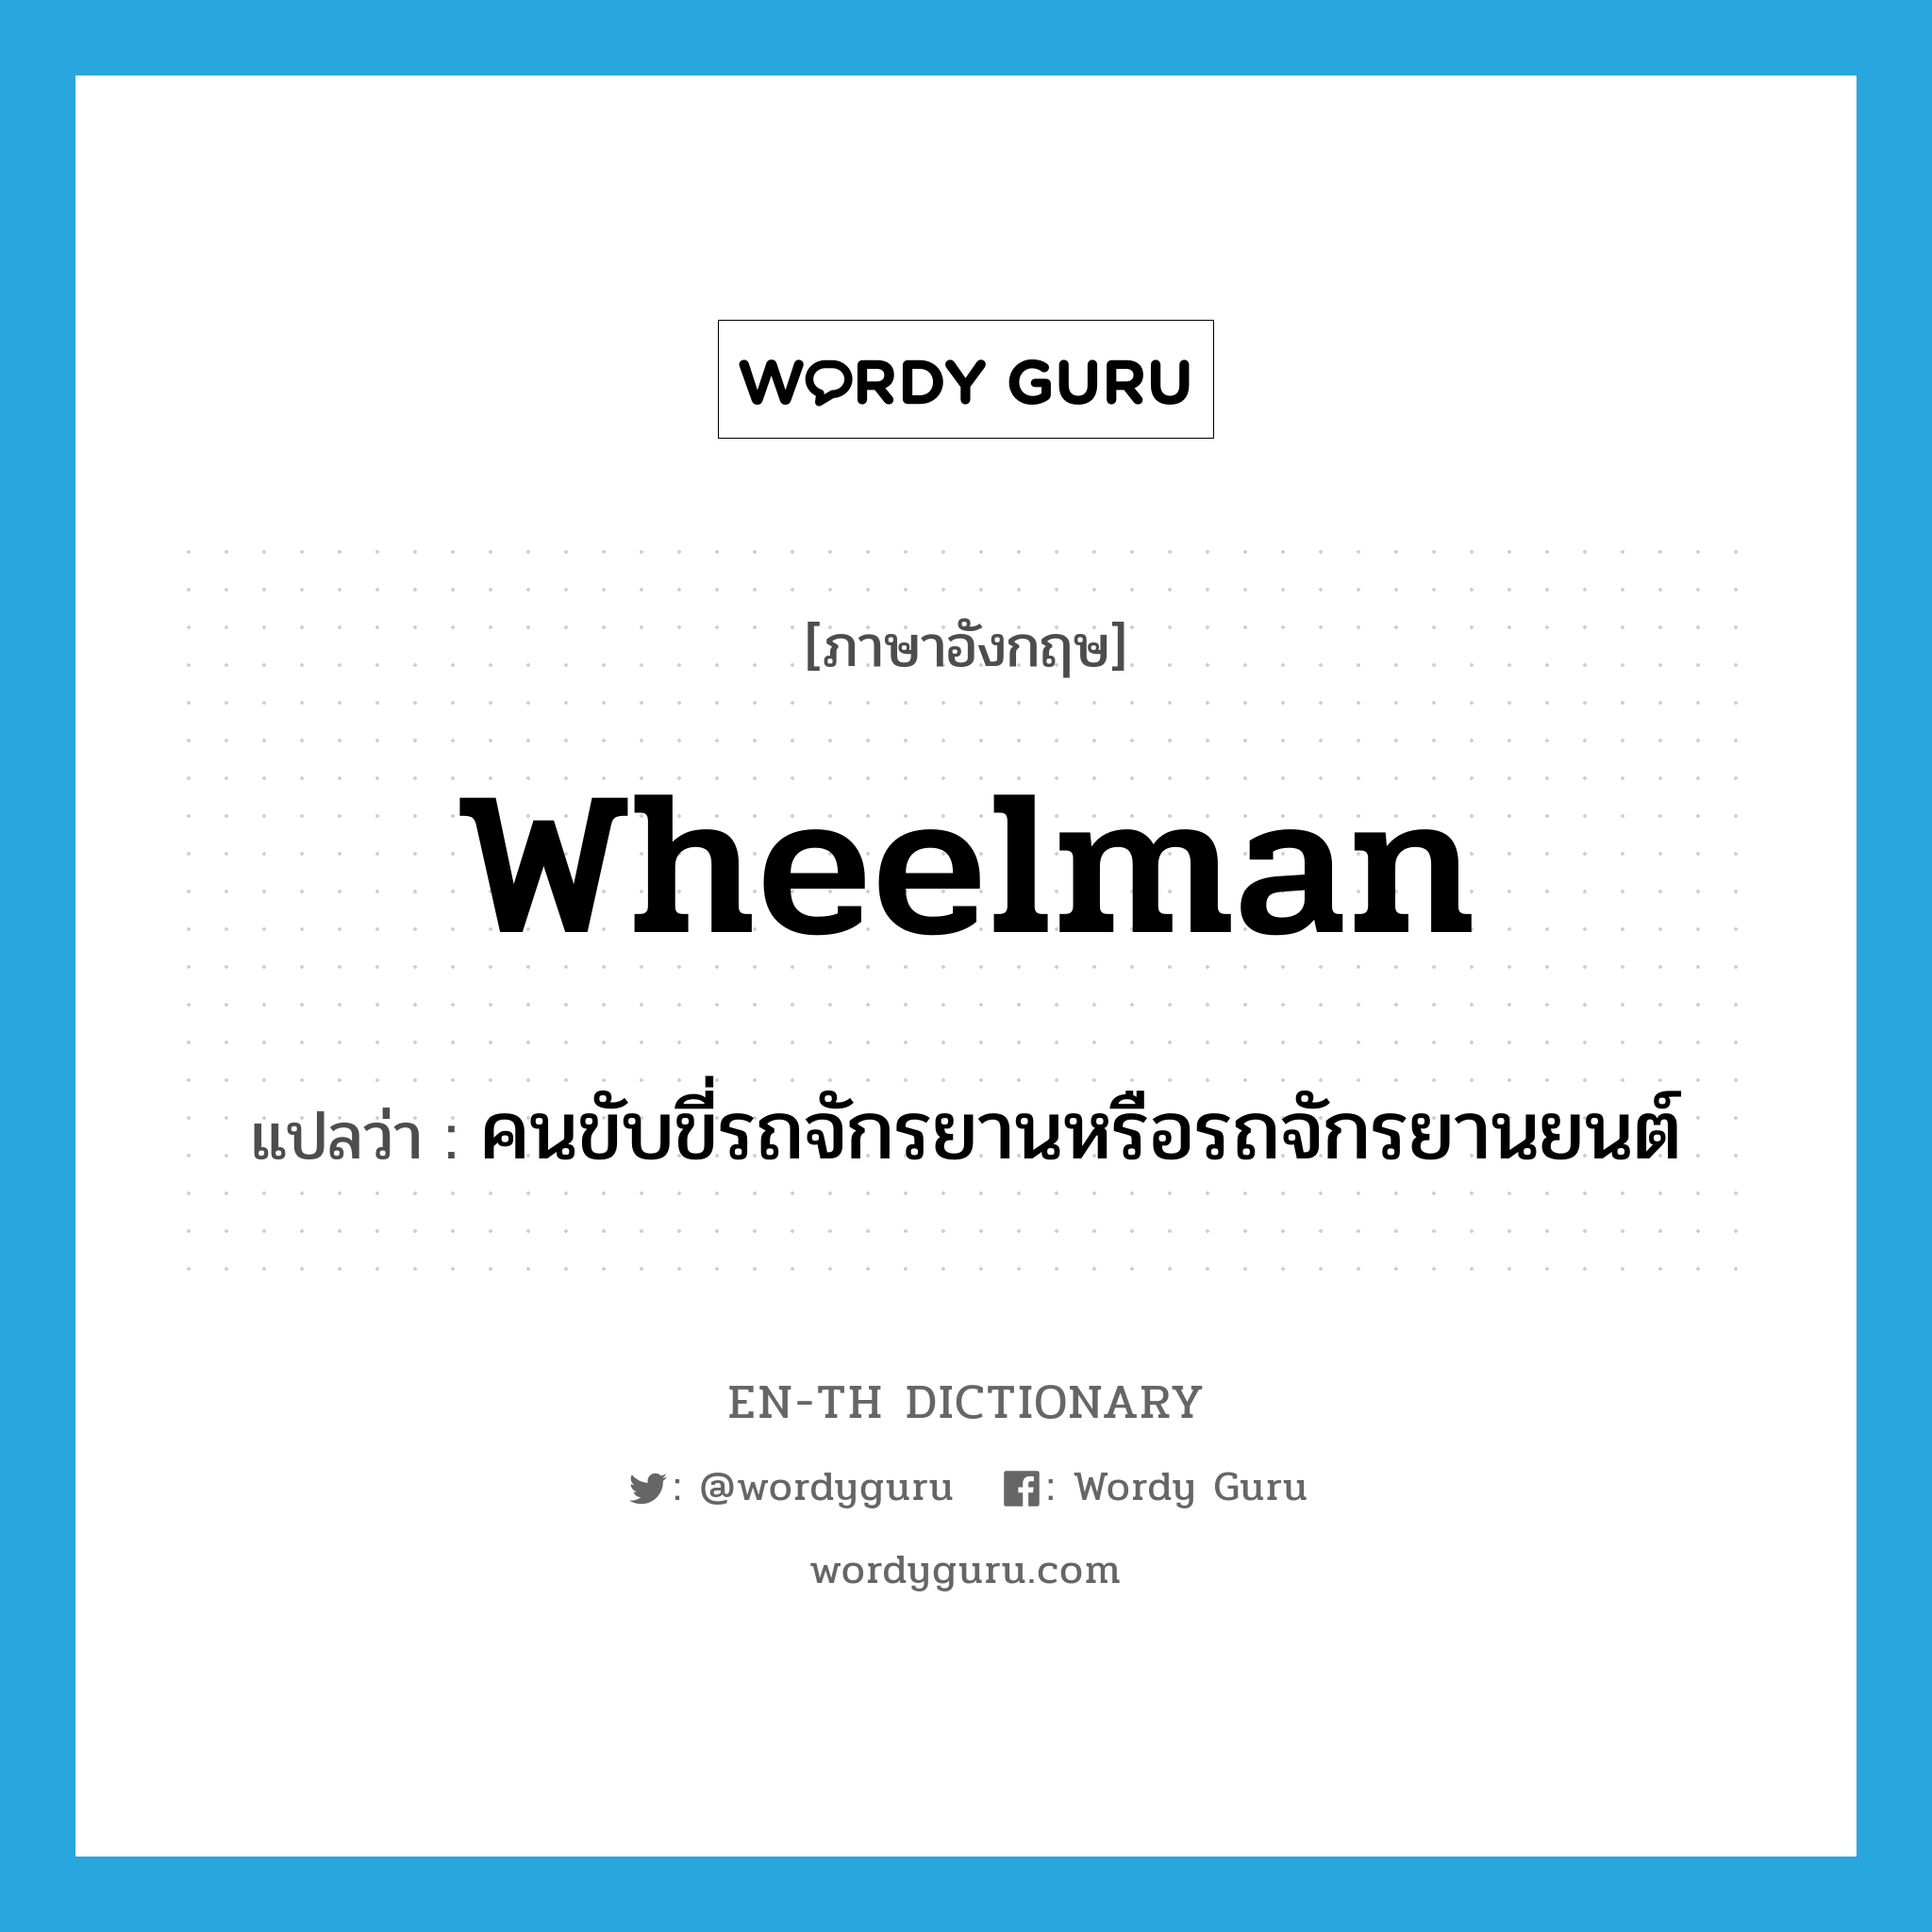 wheelman แปลว่า?, คำศัพท์ภาษาอังกฤษ wheelman แปลว่า คนขับขี่รถจักรยานหรือรถจักรยานยนต์ ประเภท N หมวด N